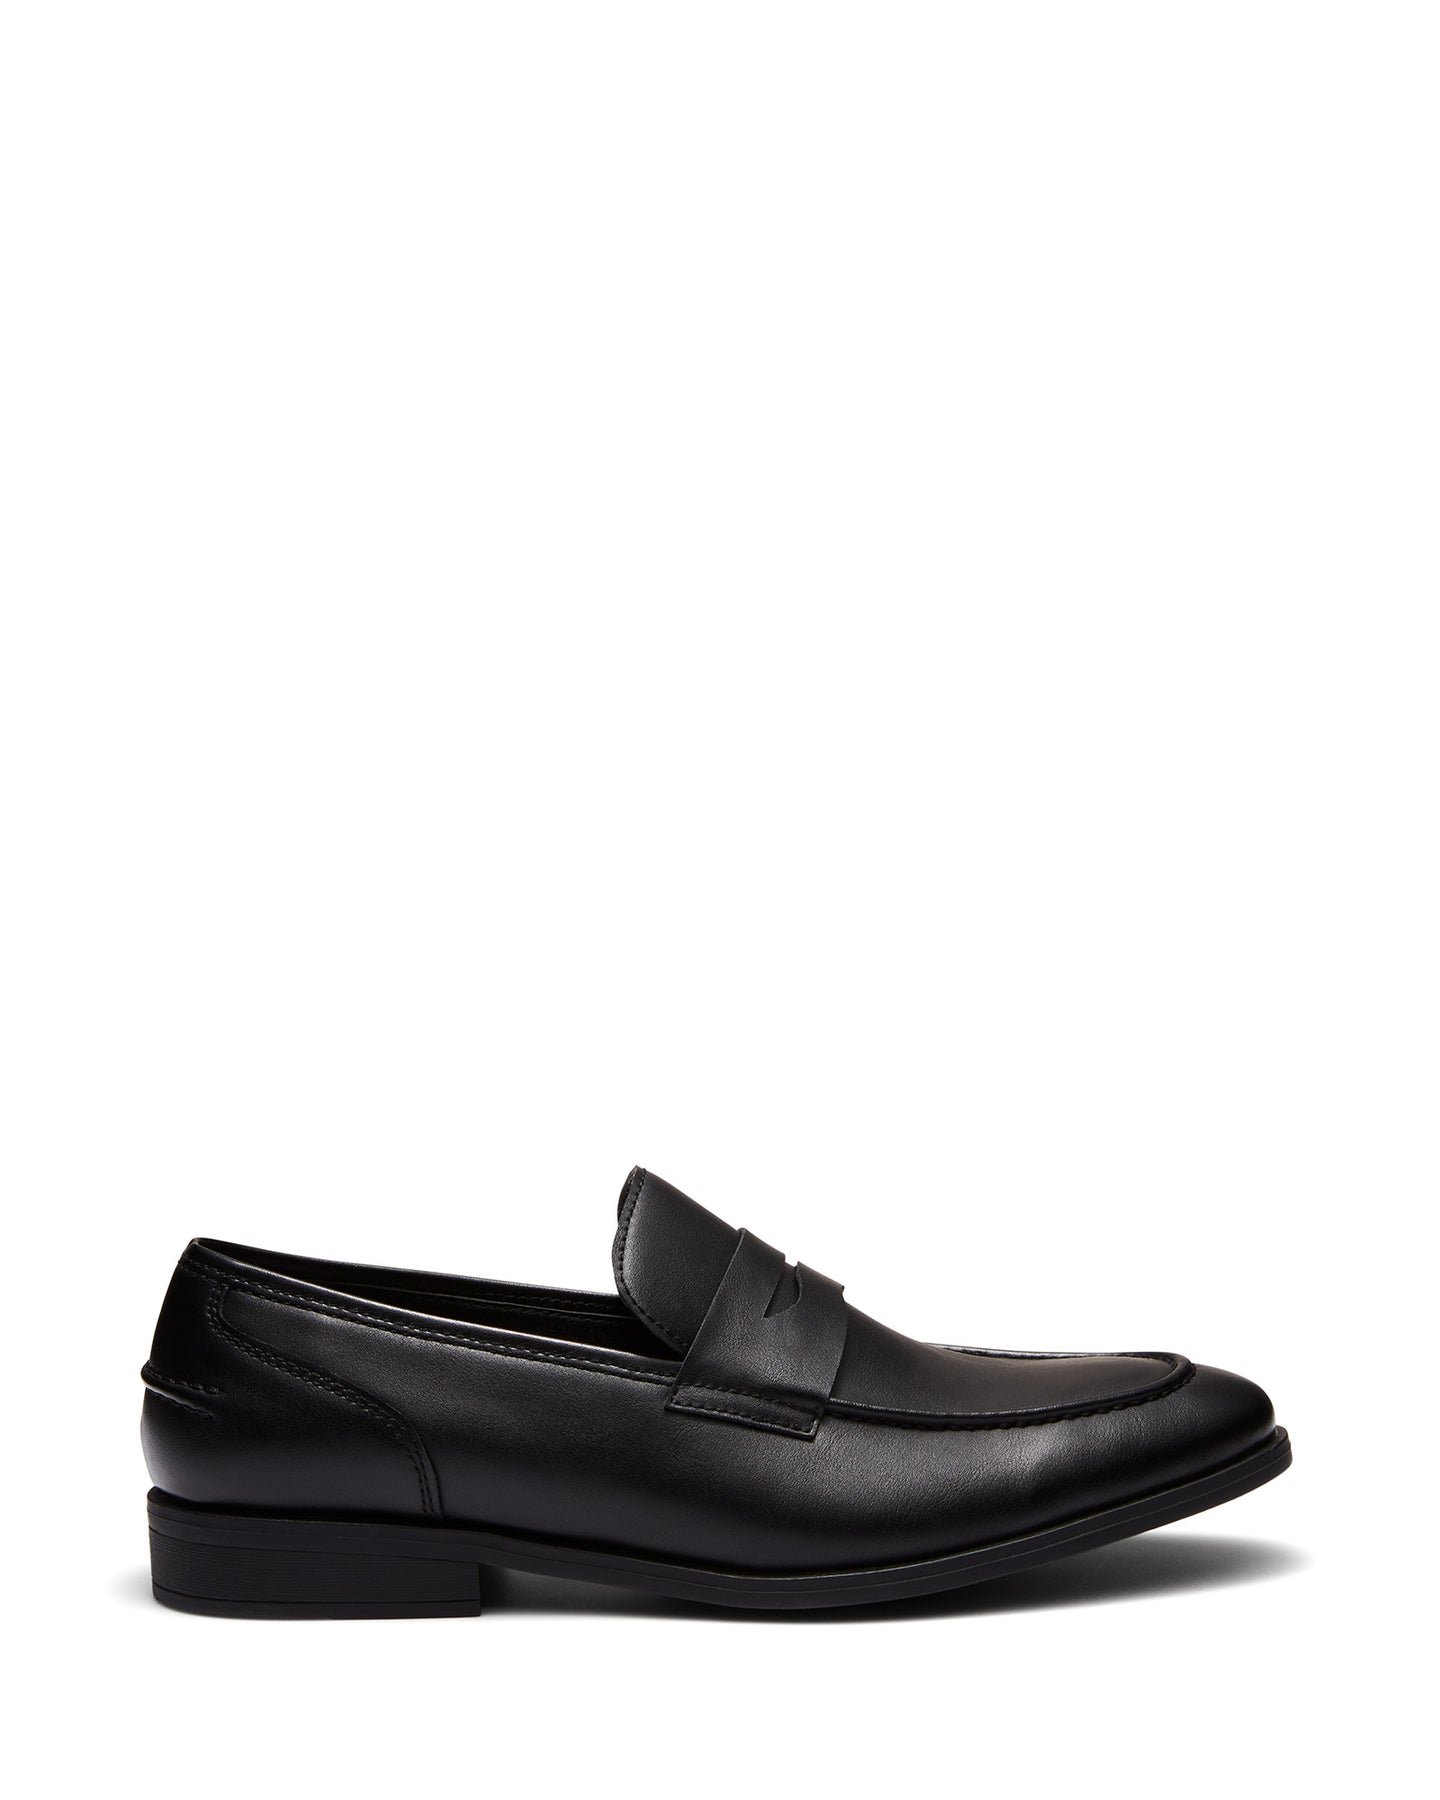 Uncut Shoes Spargo Black | Men's Loafer | Dress Shoe | Slip On | Penny 